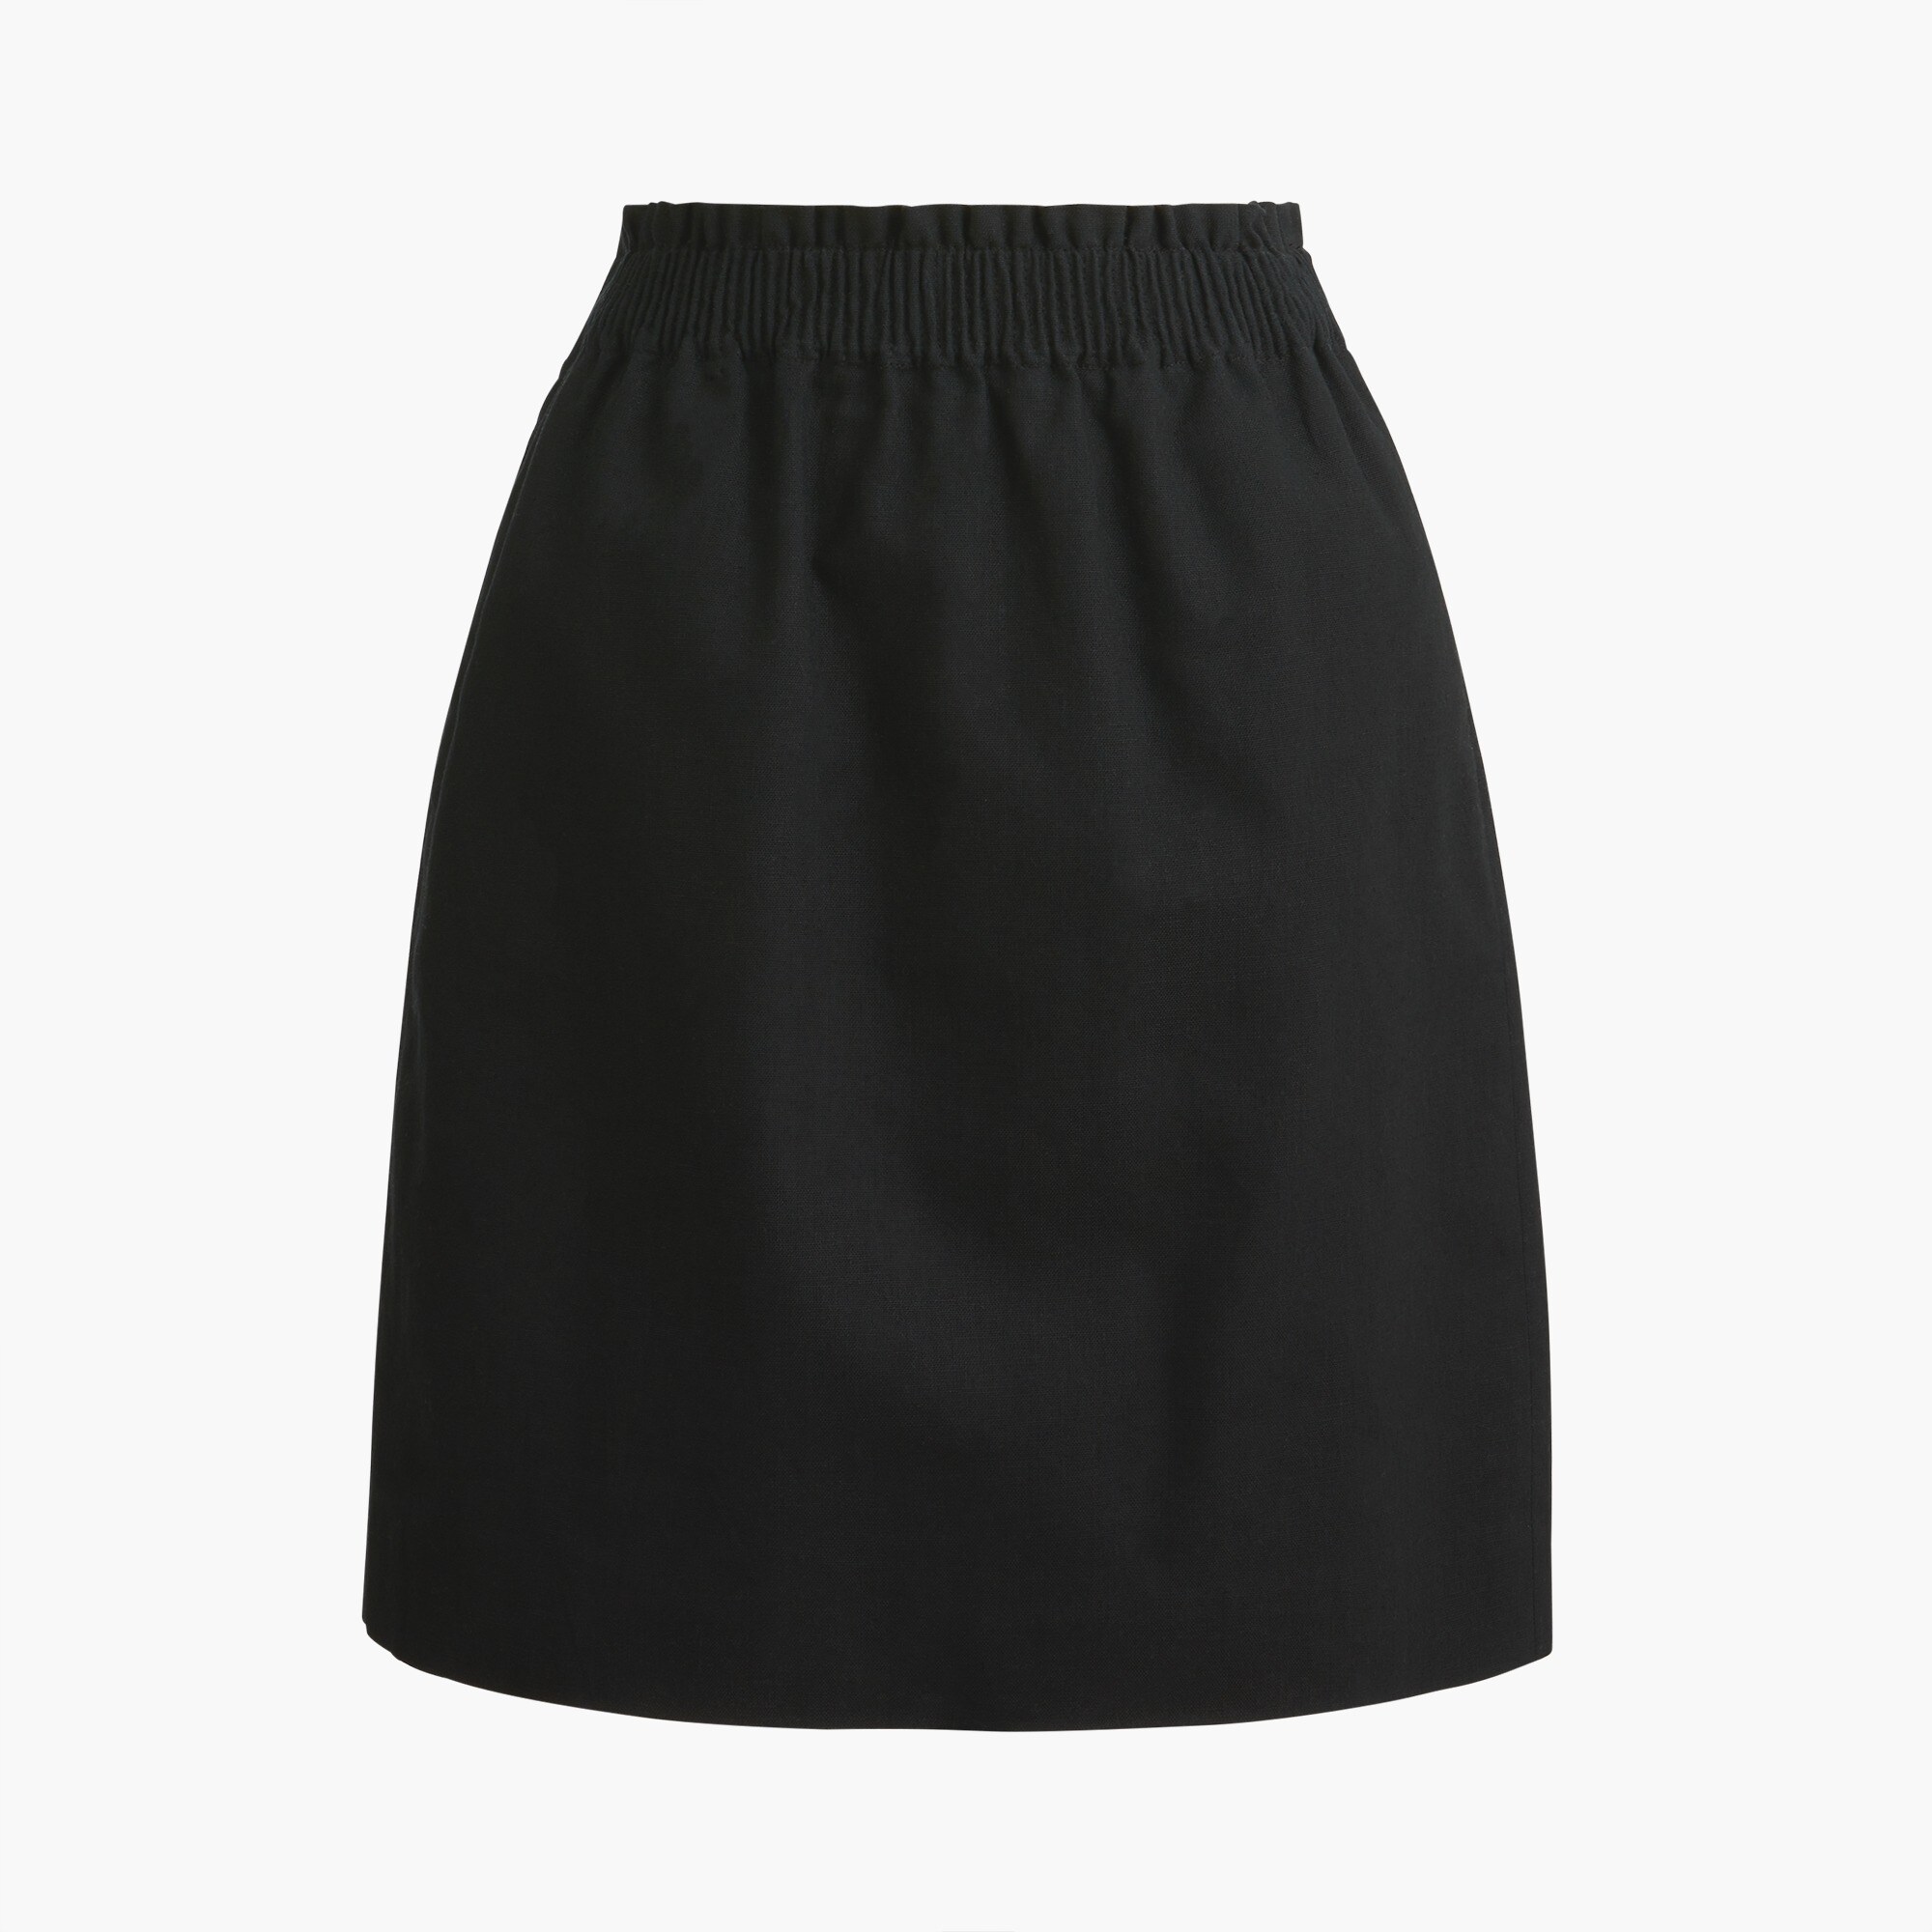  Linen-cotton blend city skirt